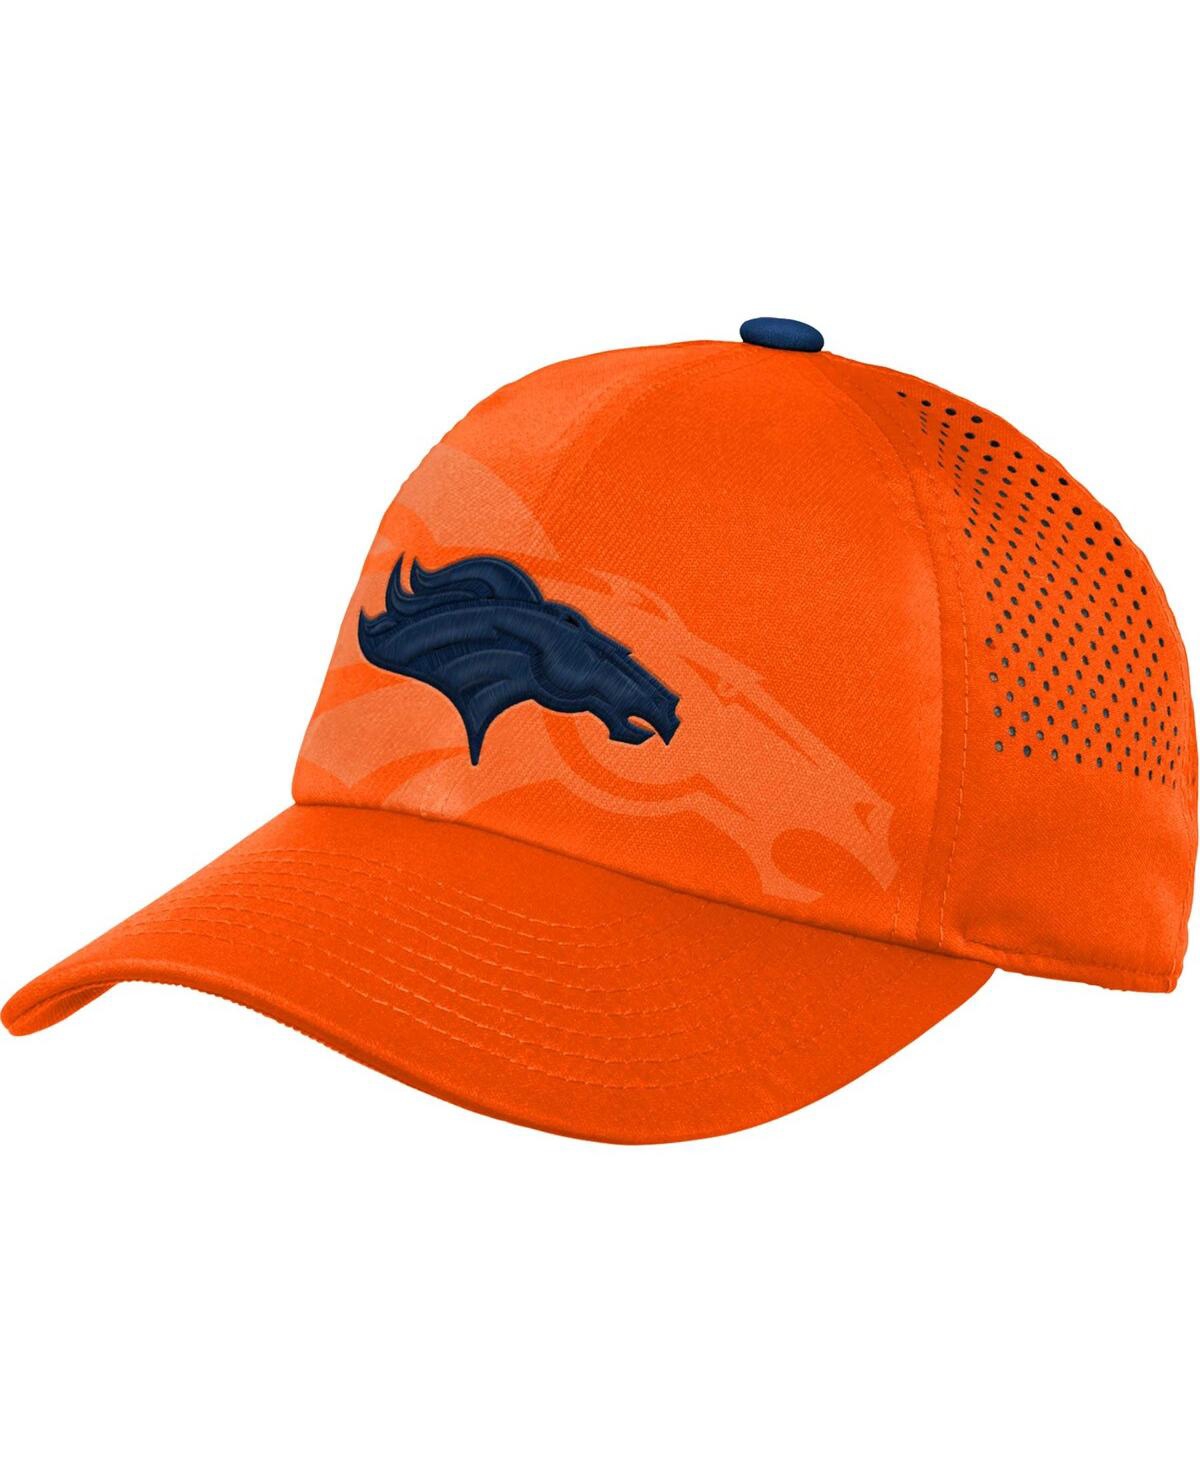 Outerstuff Kids' Big Boys And Girls Orange Denver Broncos Tailgate Adjustable Hat